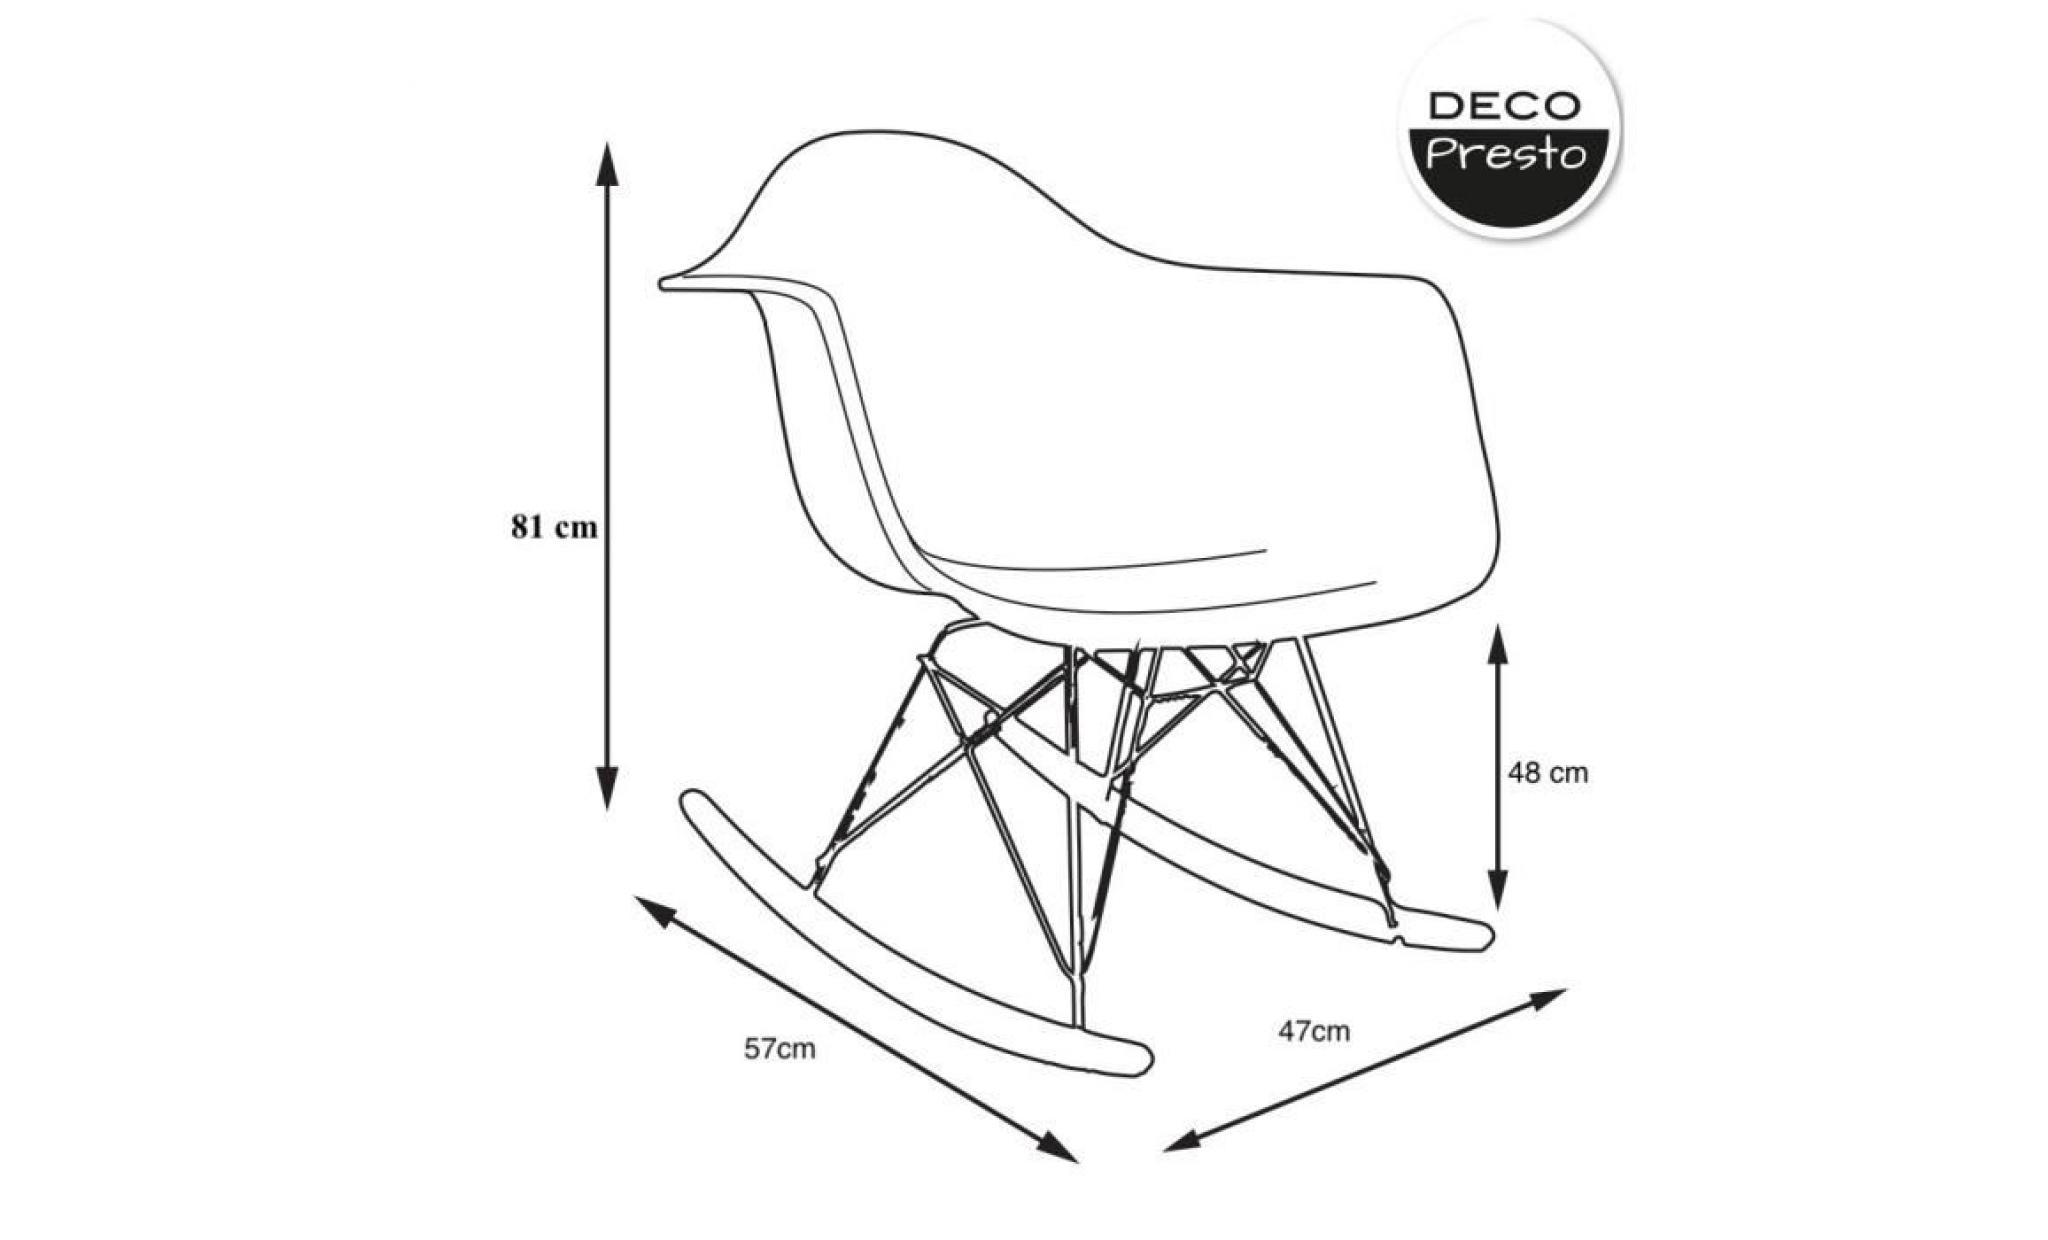 1 x fauteuil à bascule rocking chair eiffel haut. 48 cm patchwork bleu pieds: bois noir decopresto dp rarb48 pcb 1 pas cher